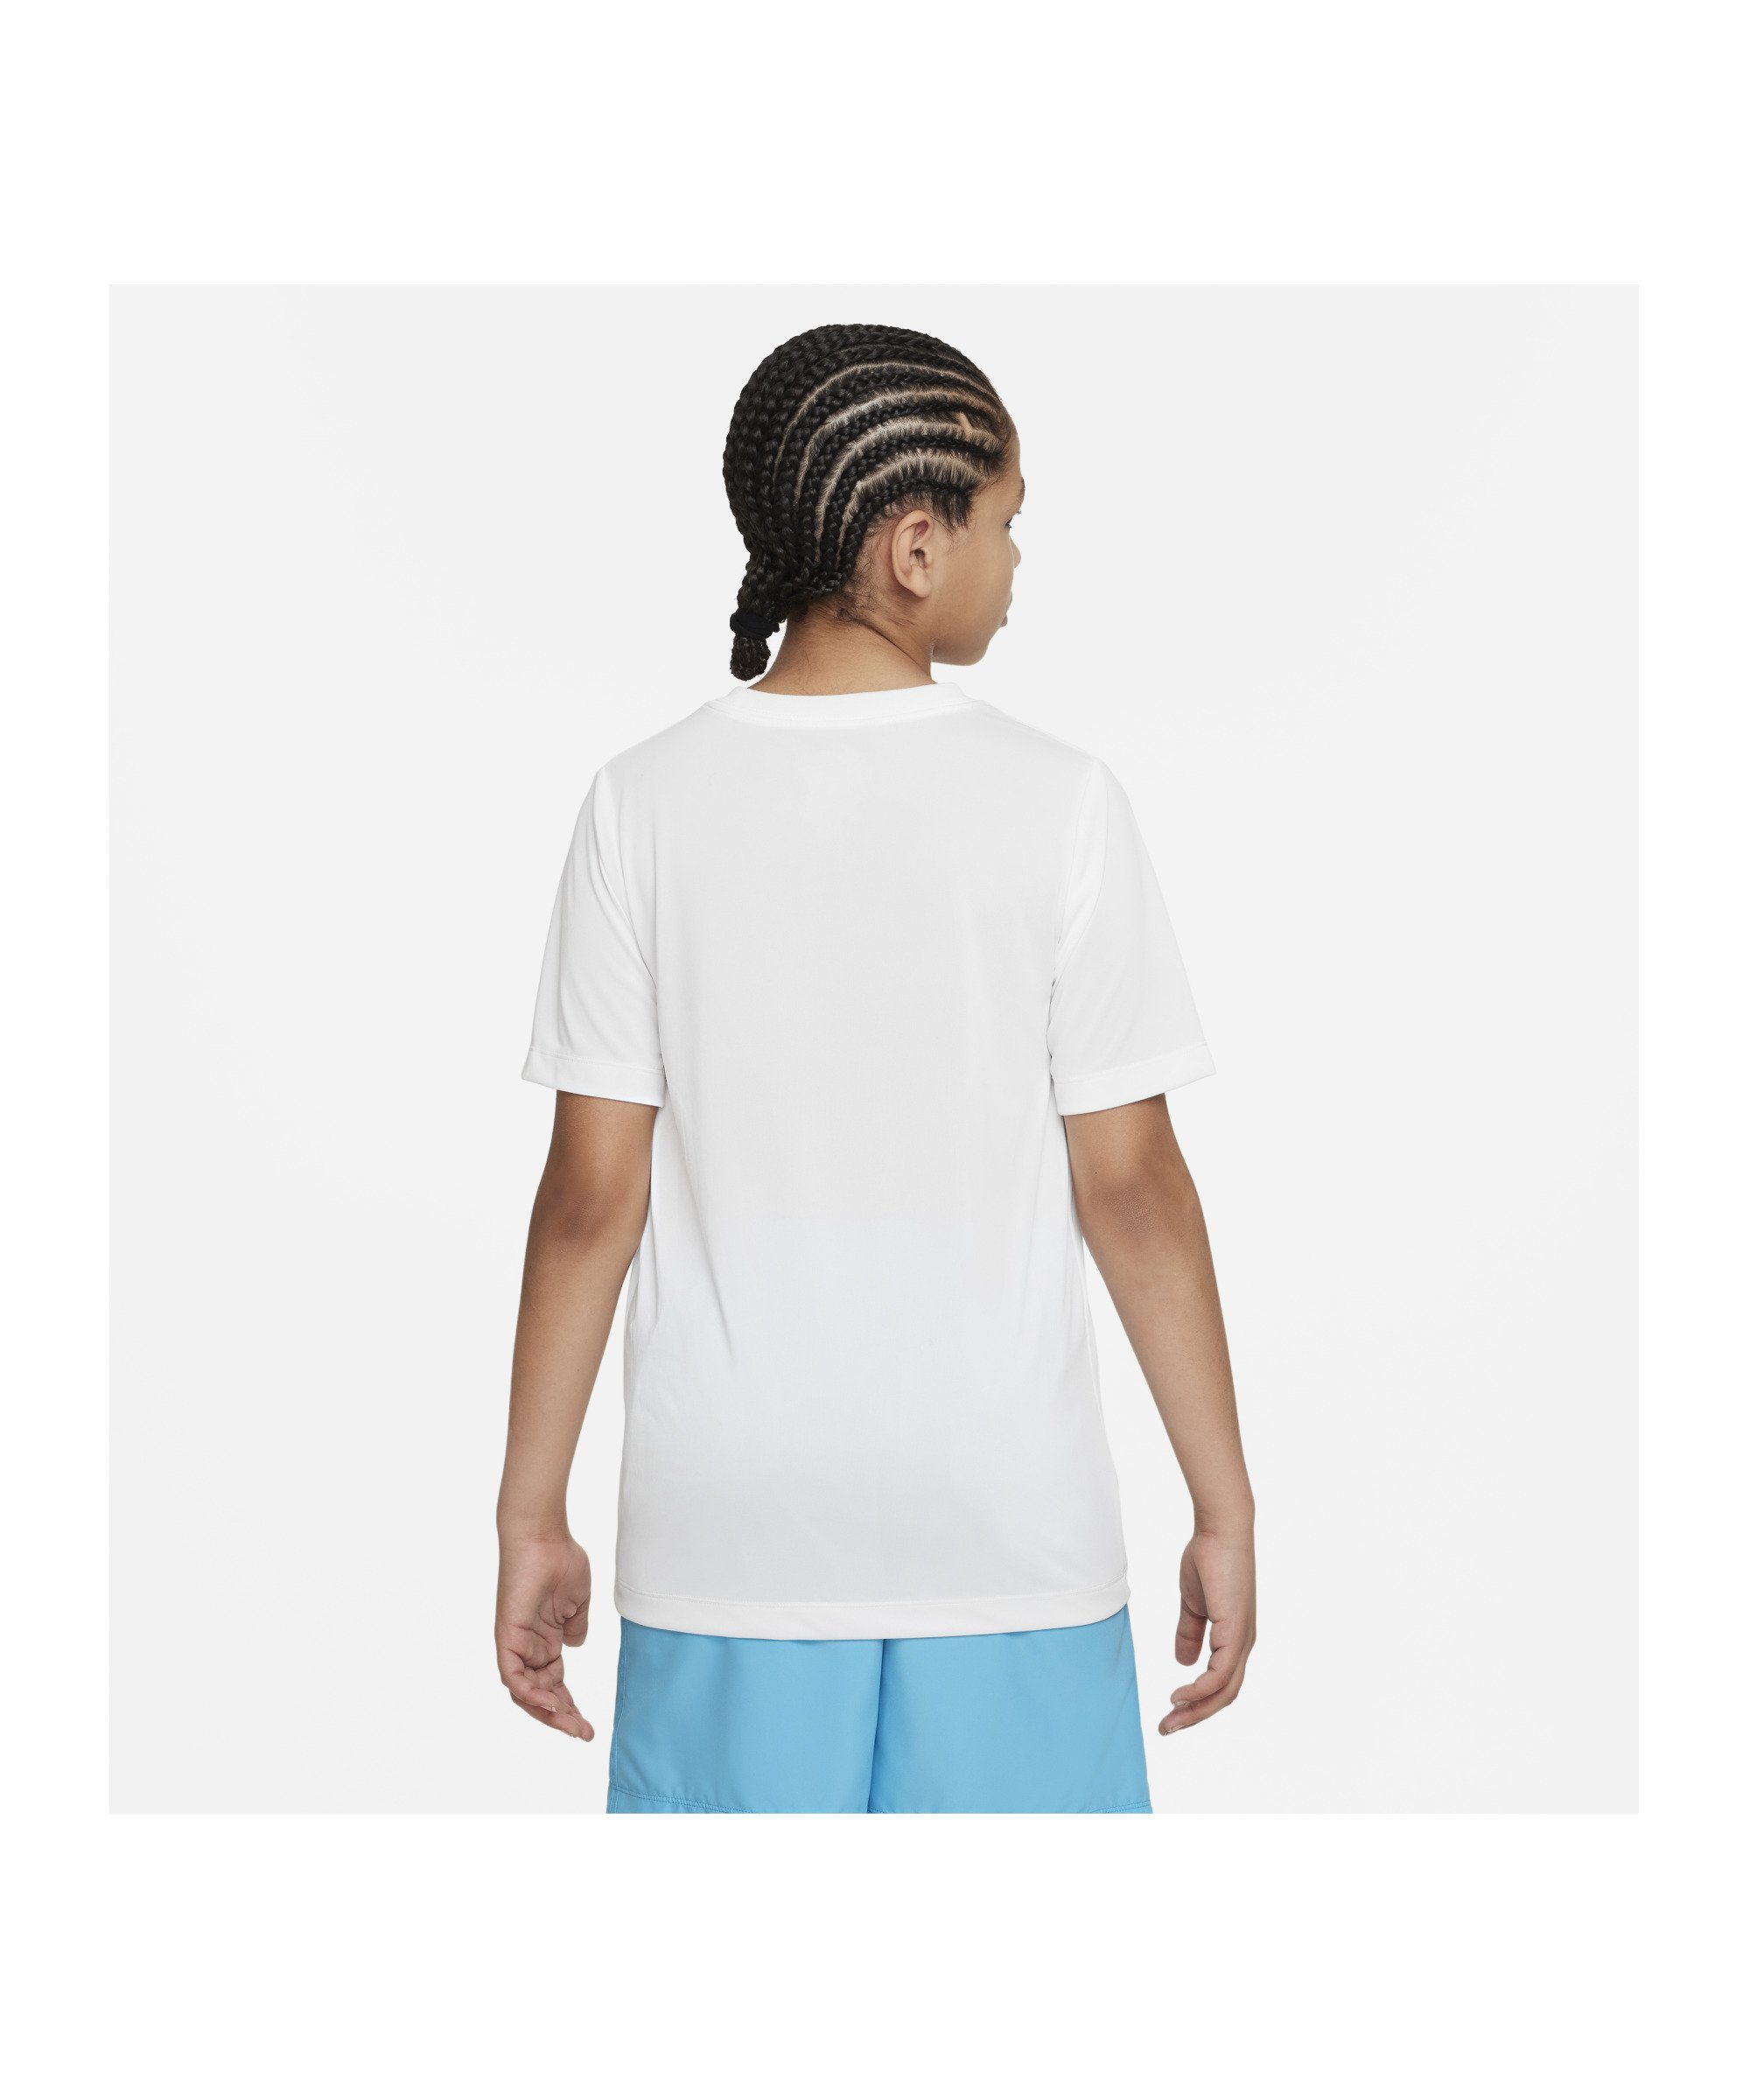 Nike Laufshirt Training T-Shirt Kids default weiss